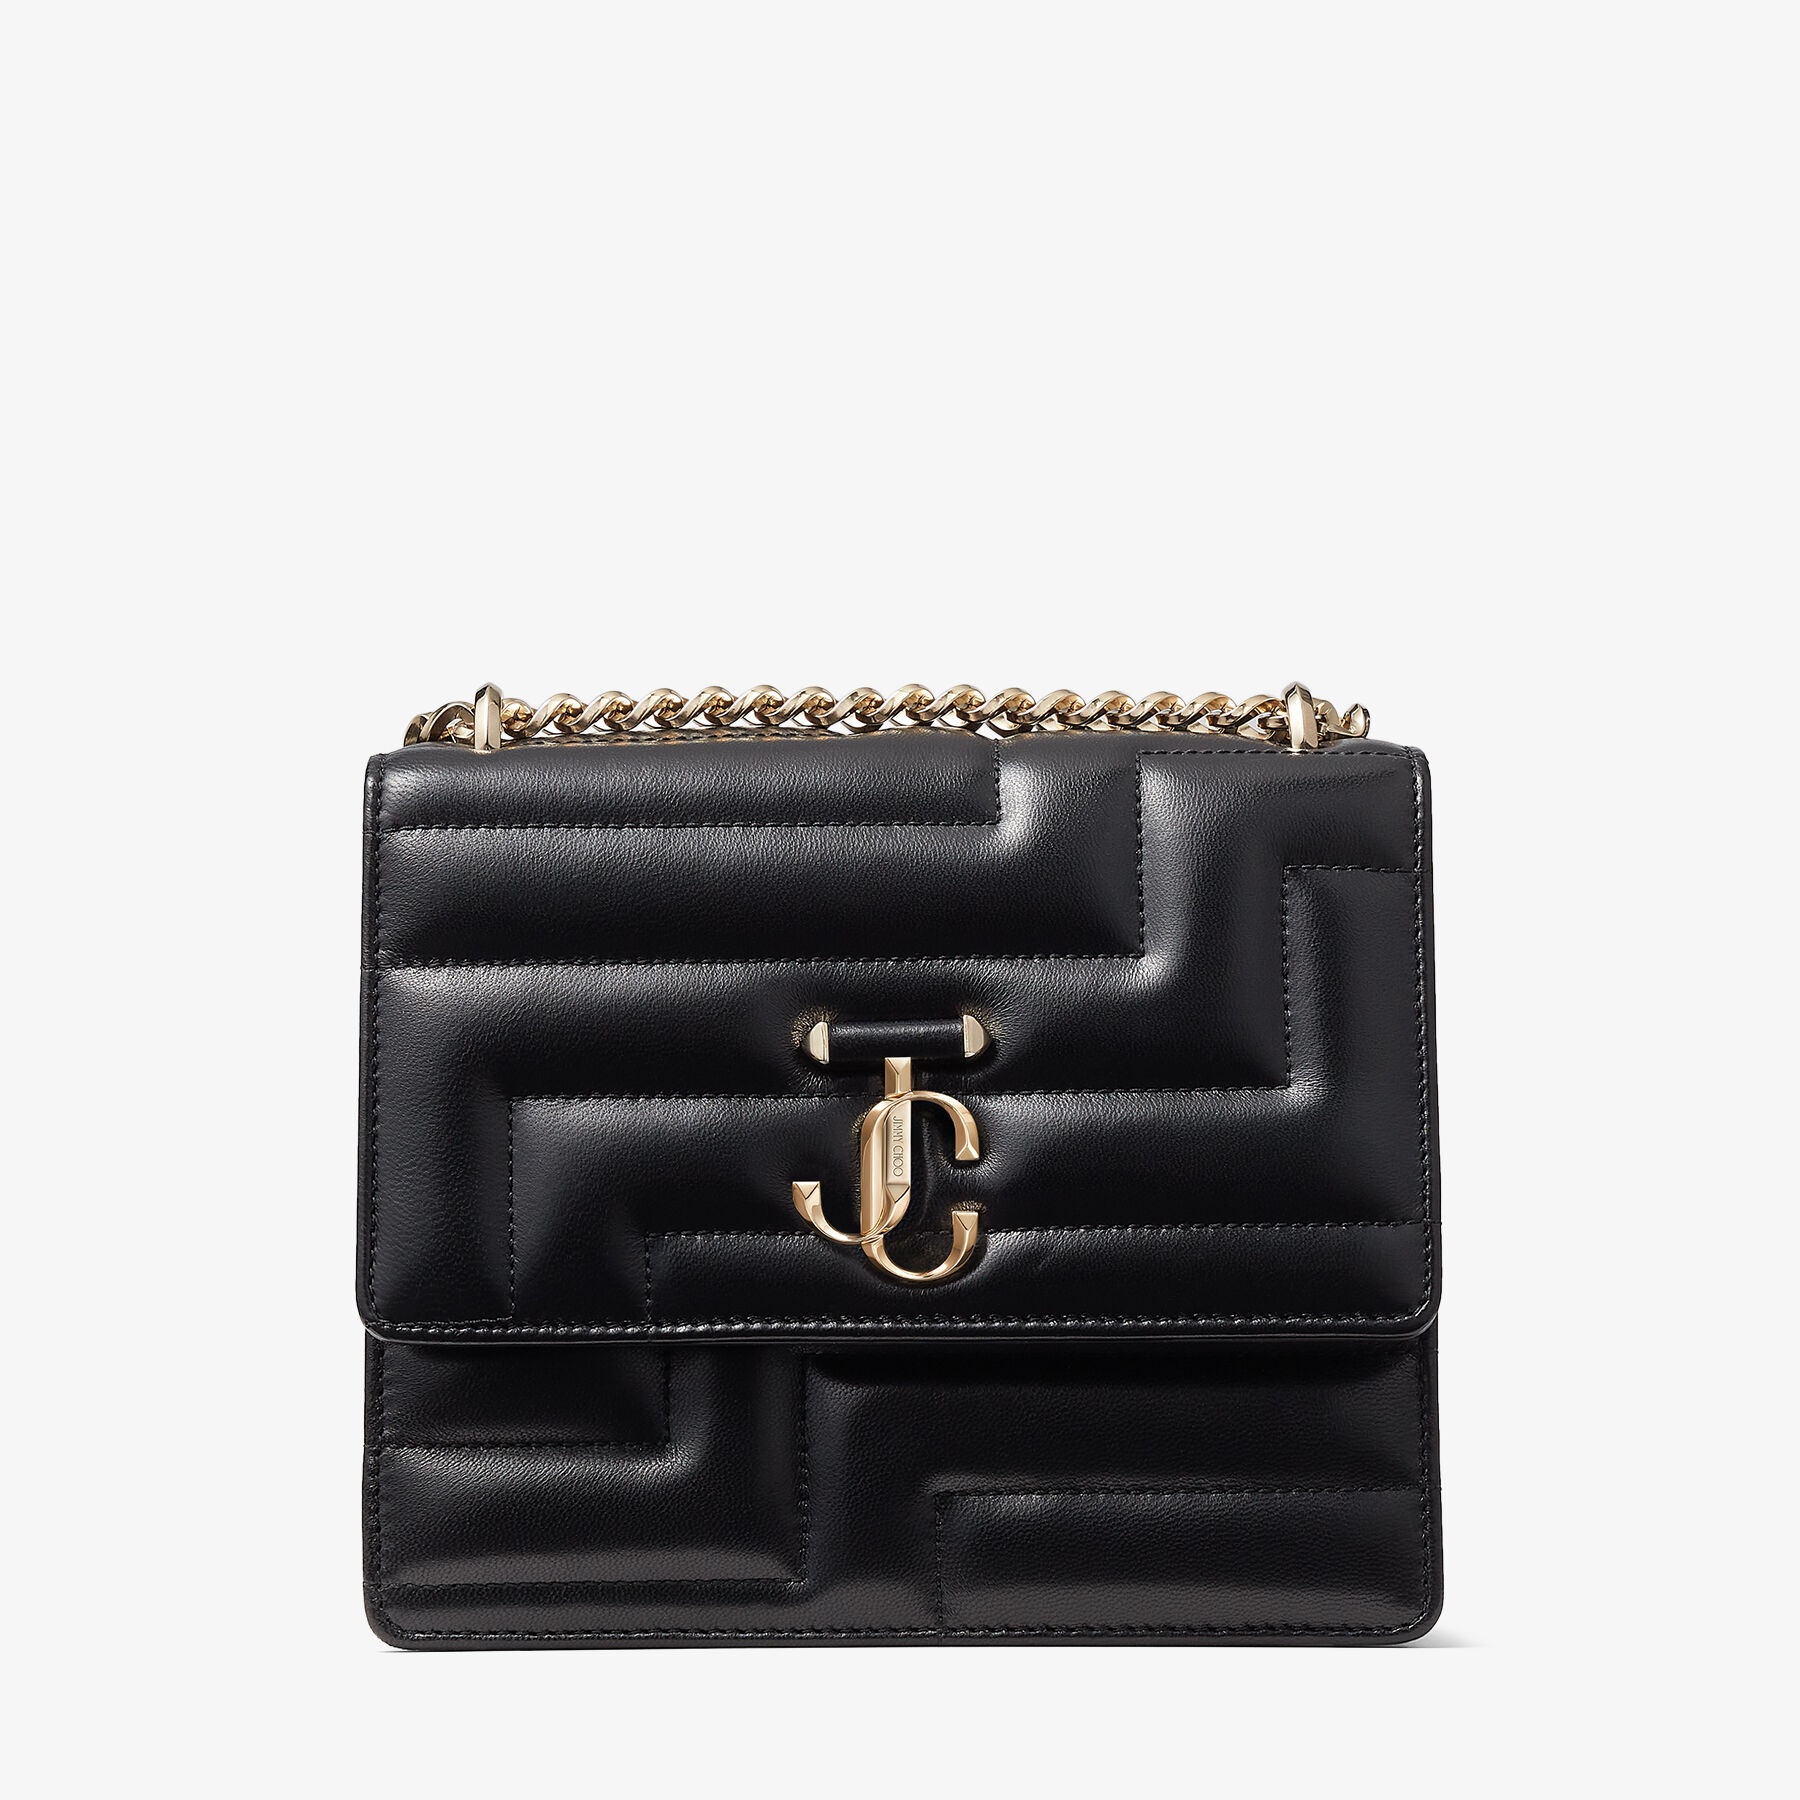 Varenne Avenue Quad
Black Avenue Nappa Leather Bag with Light Gold JC Emblem - 1